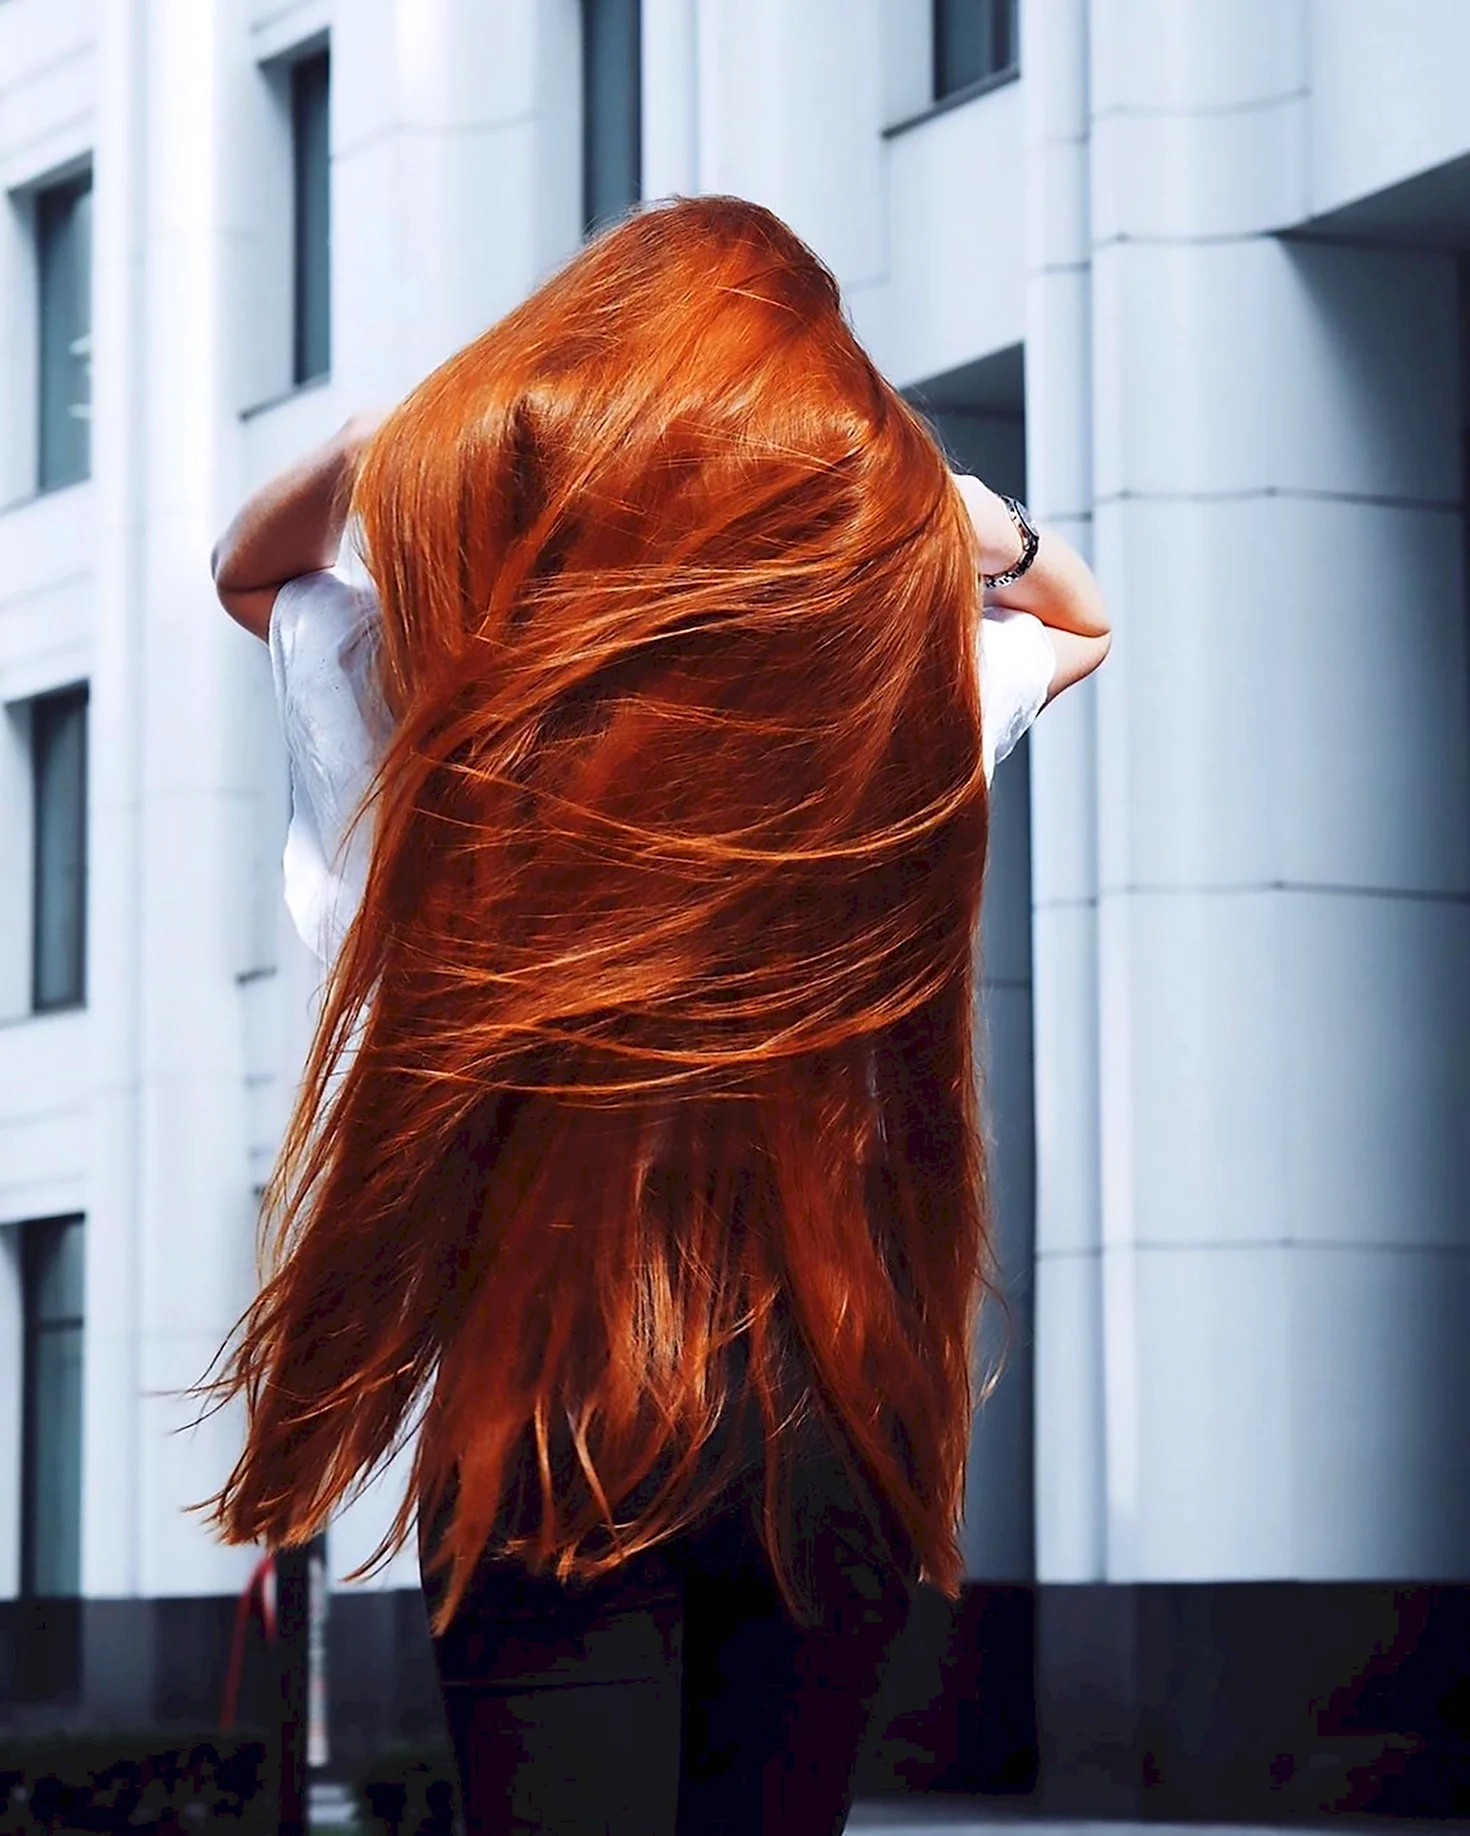 Анастасия Сидорова с длинными рыжими волосами